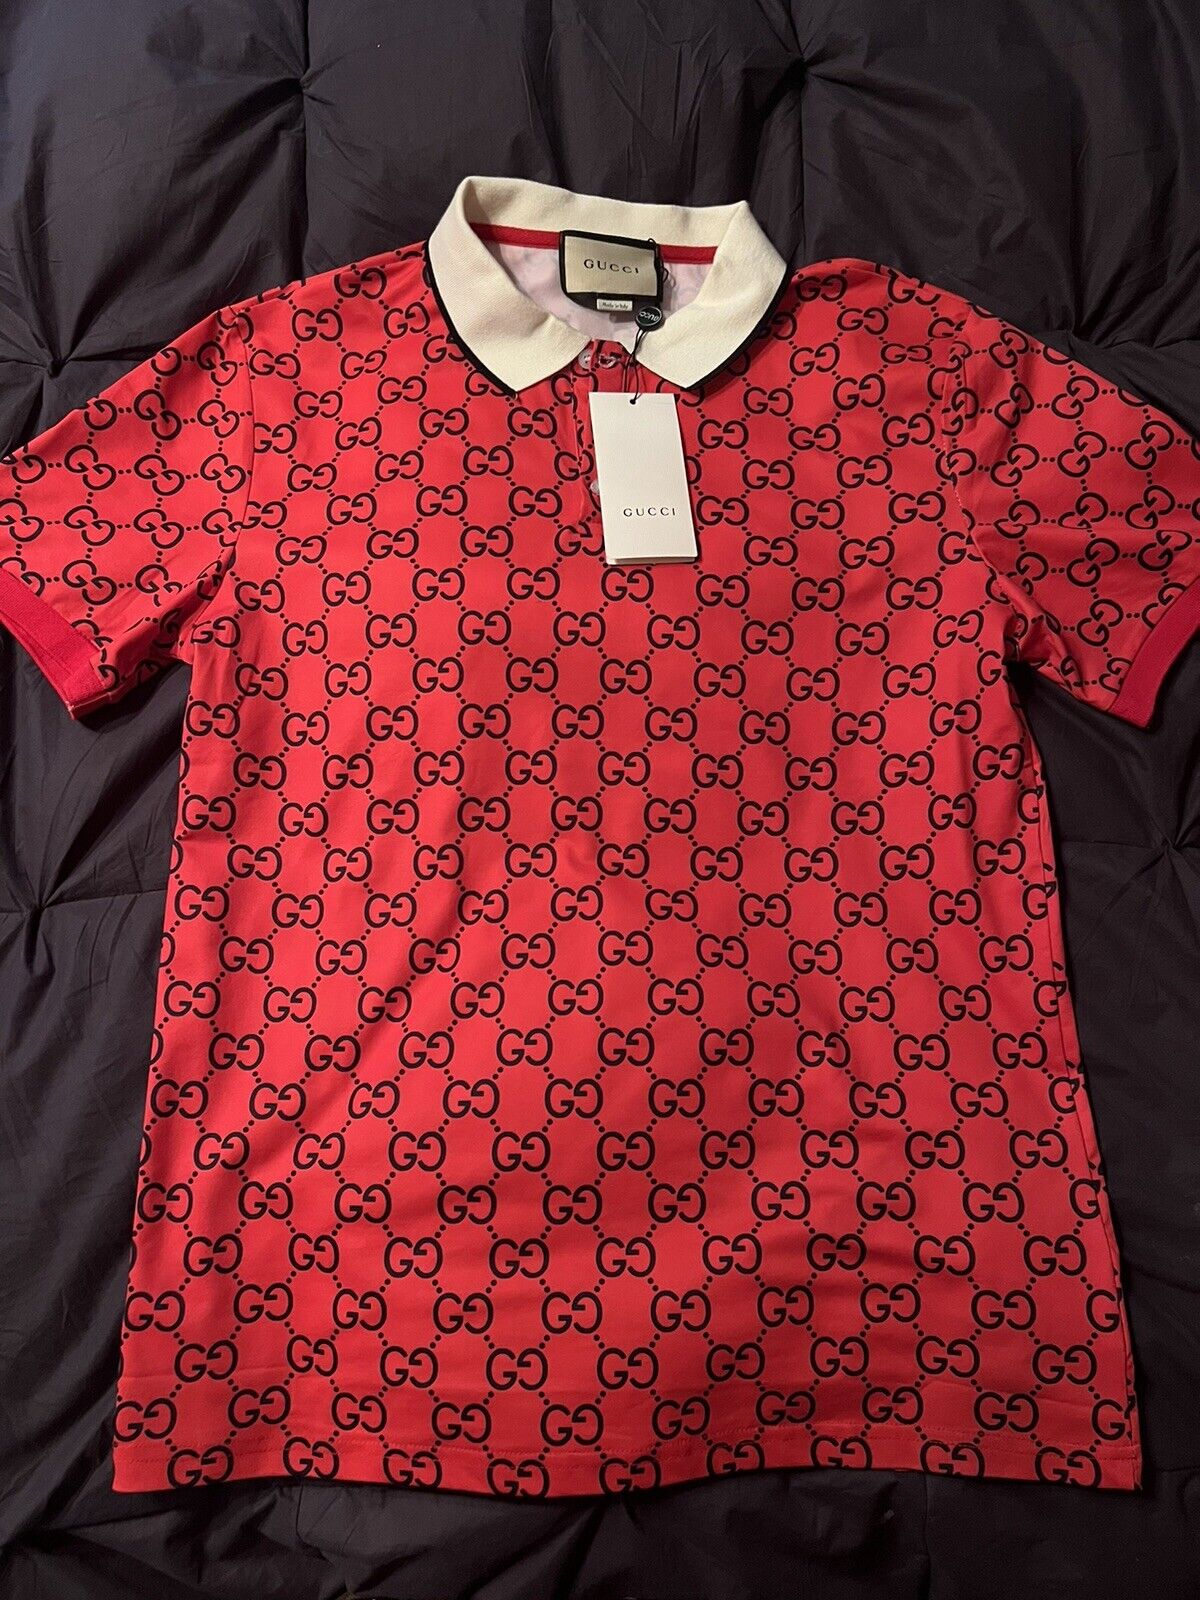 GUCCI “G” pattern polo shirts